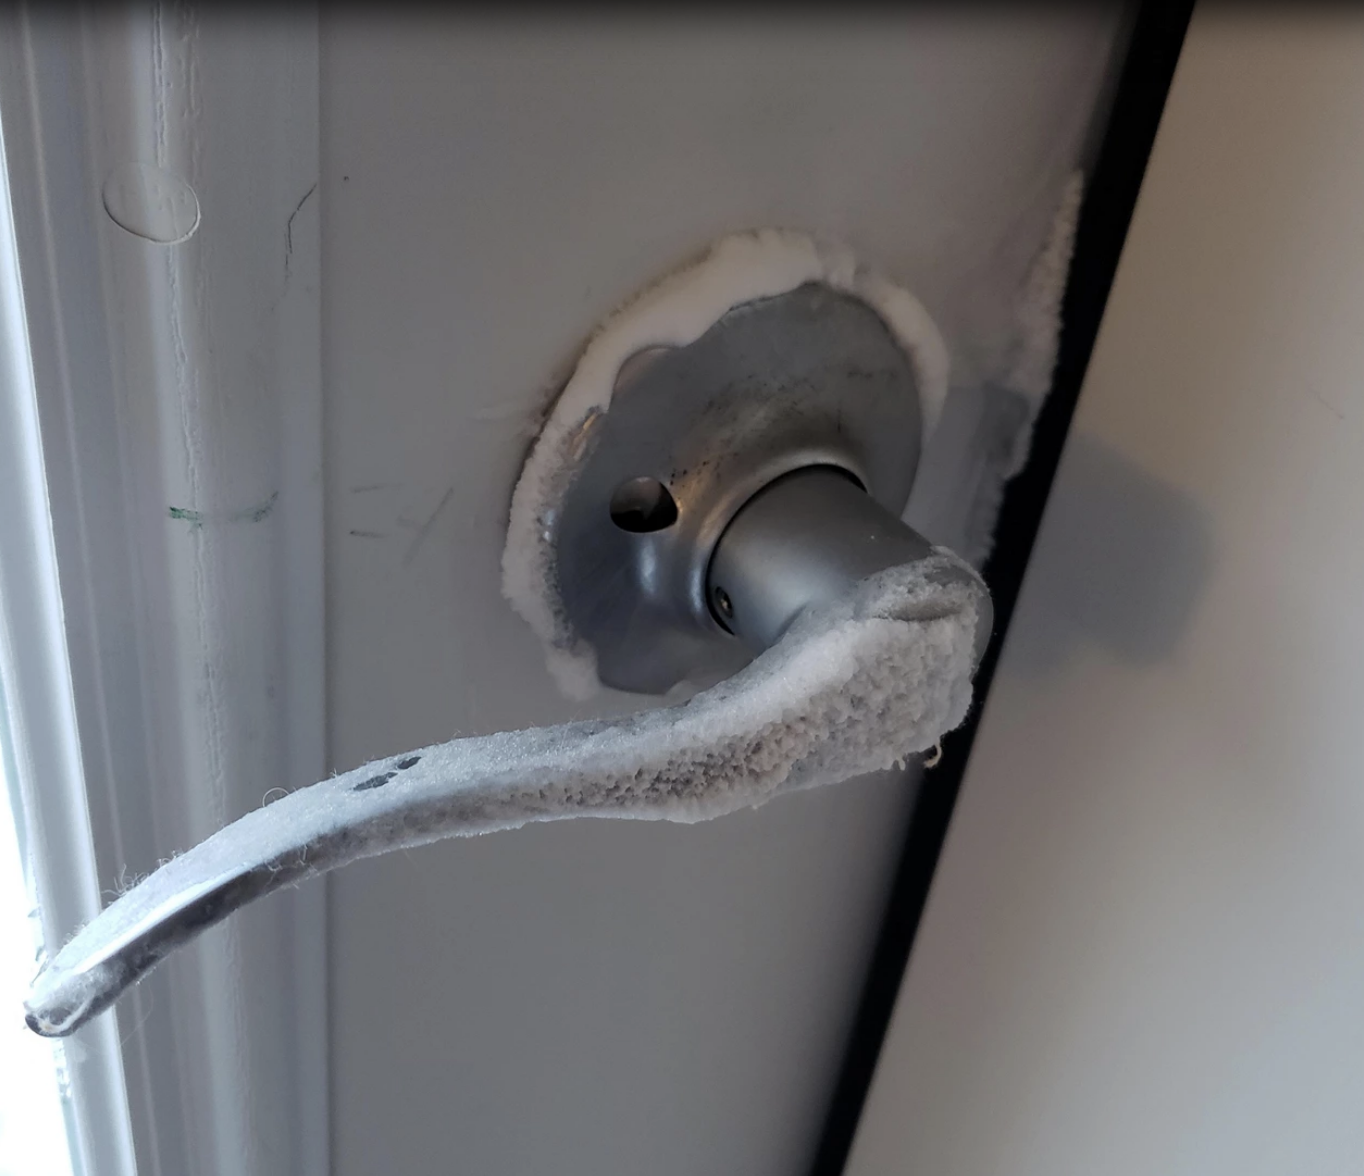 A frozen doorknob